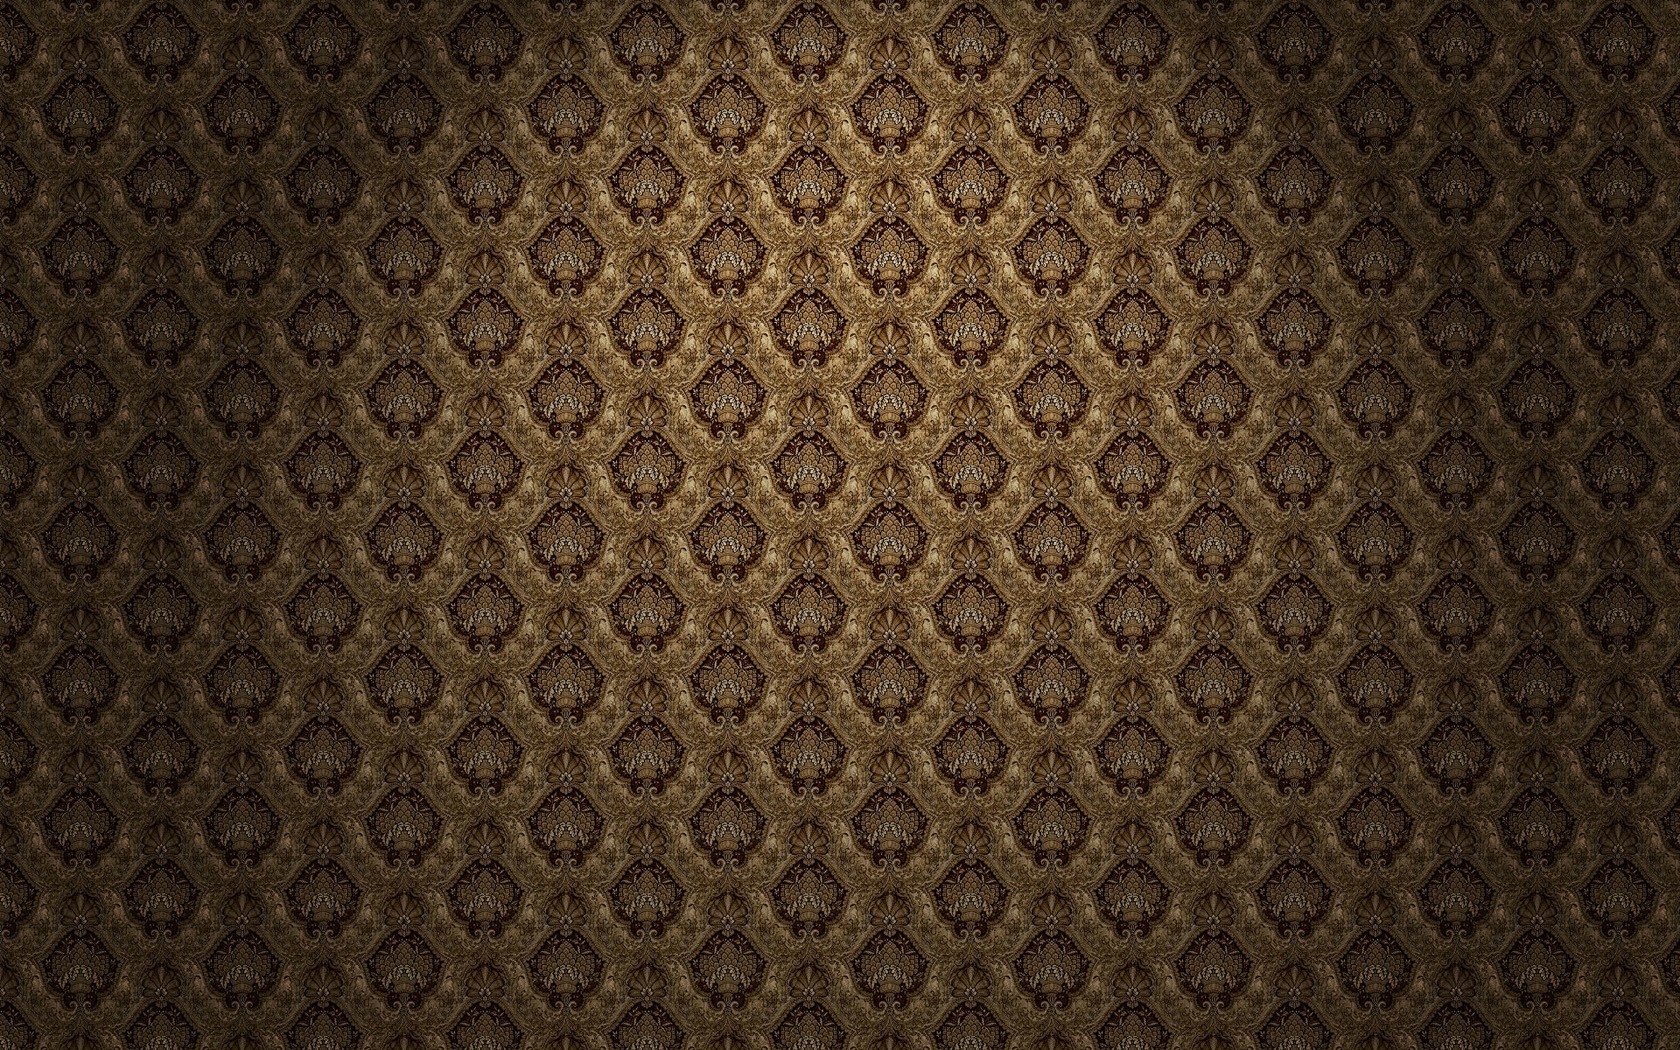 General 1680x1050 pattern texture digital art minimalism